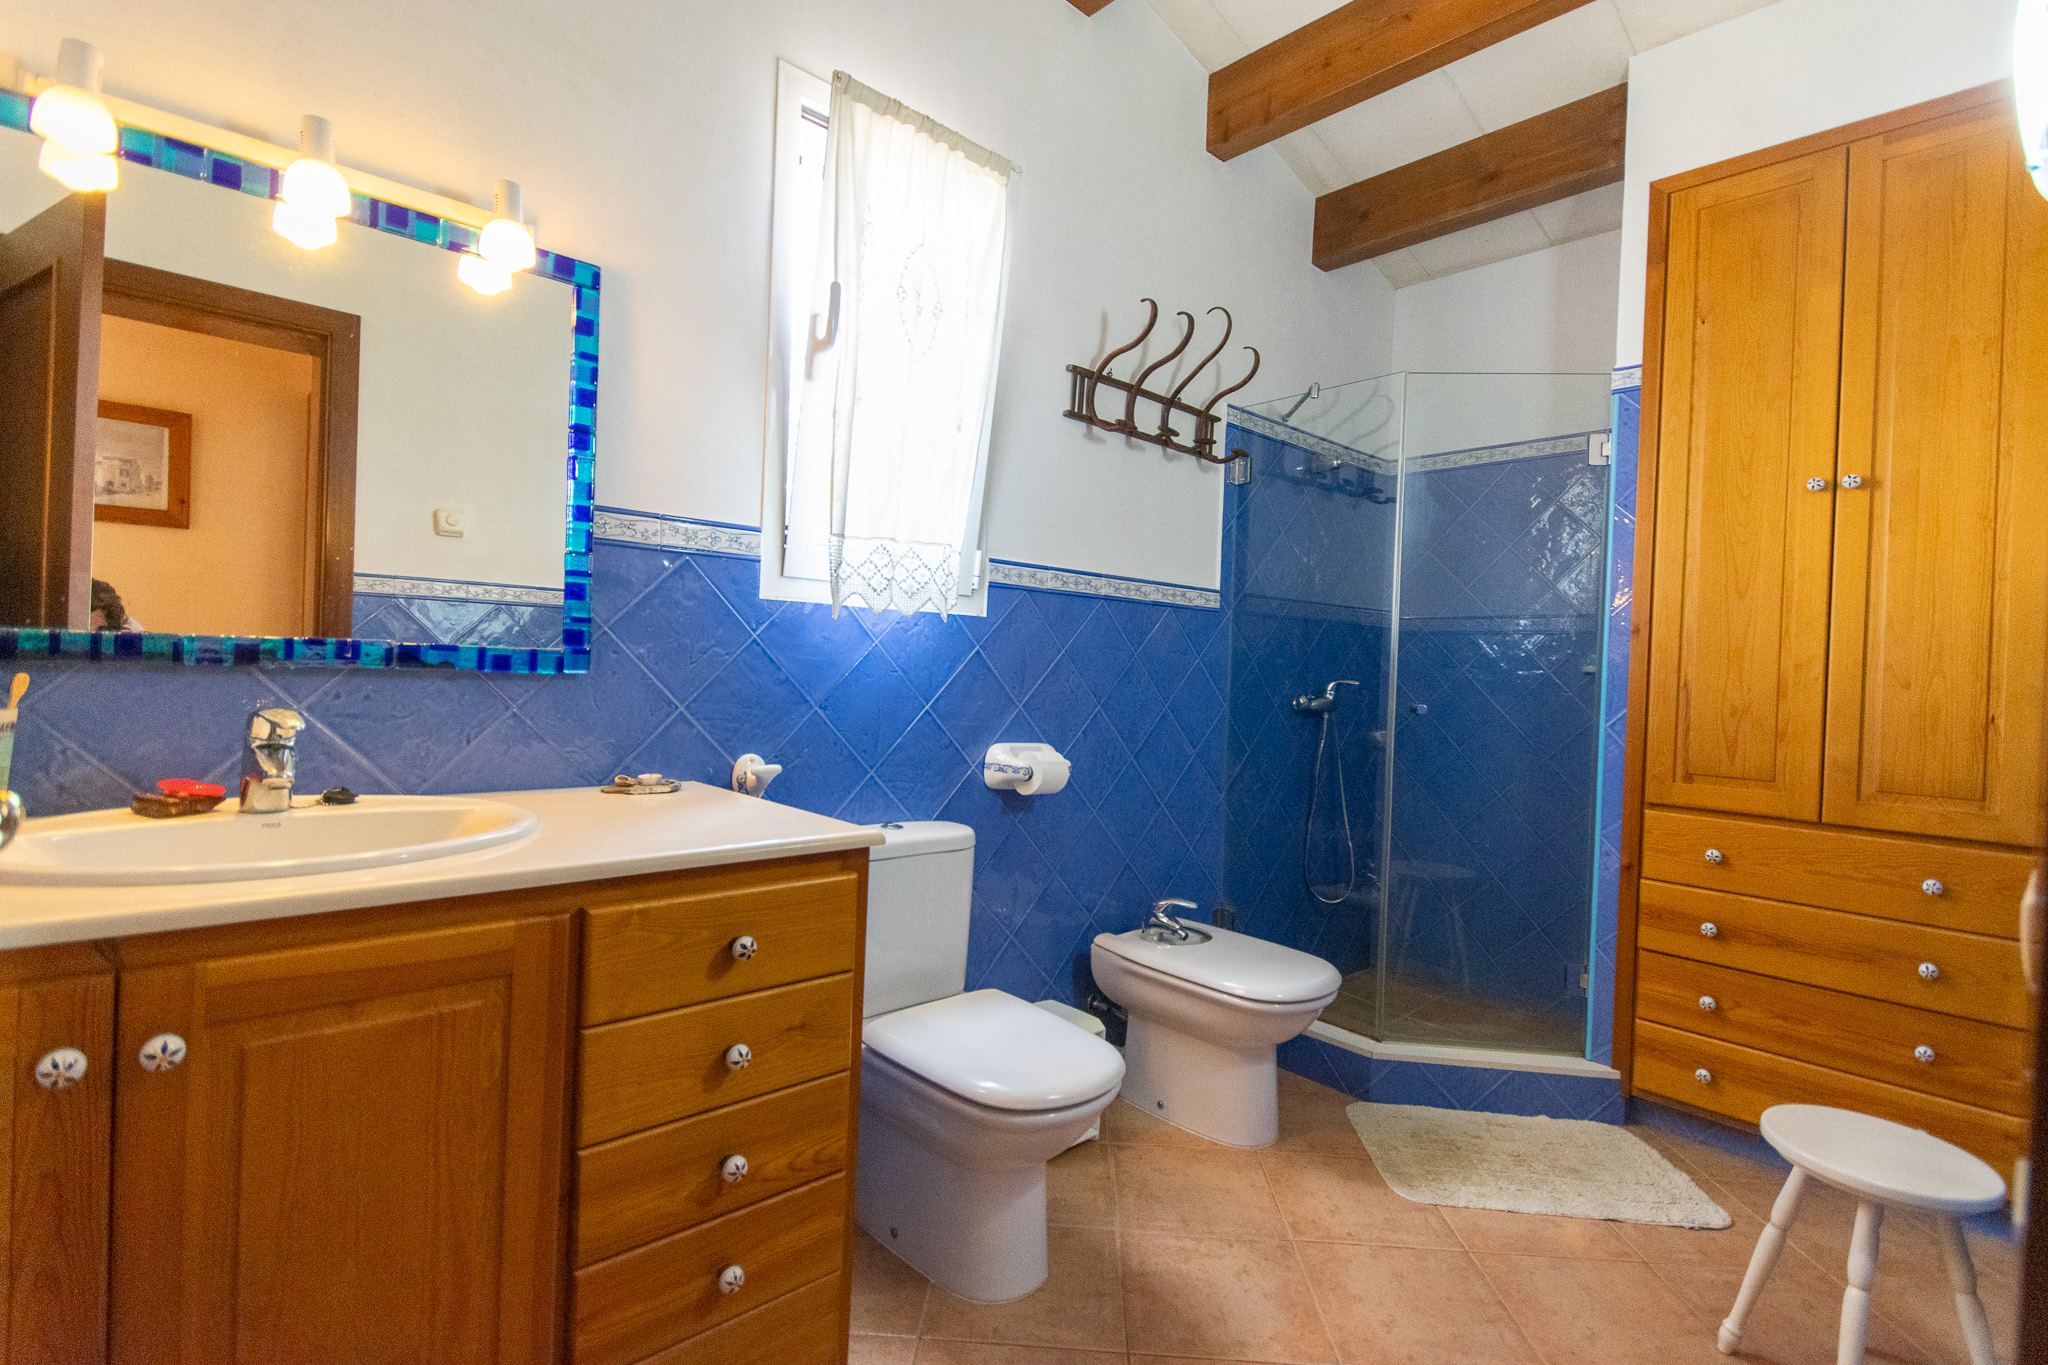 Salle de bain avec douche dans la maison minorquine avec piscine et garage à Mercadal